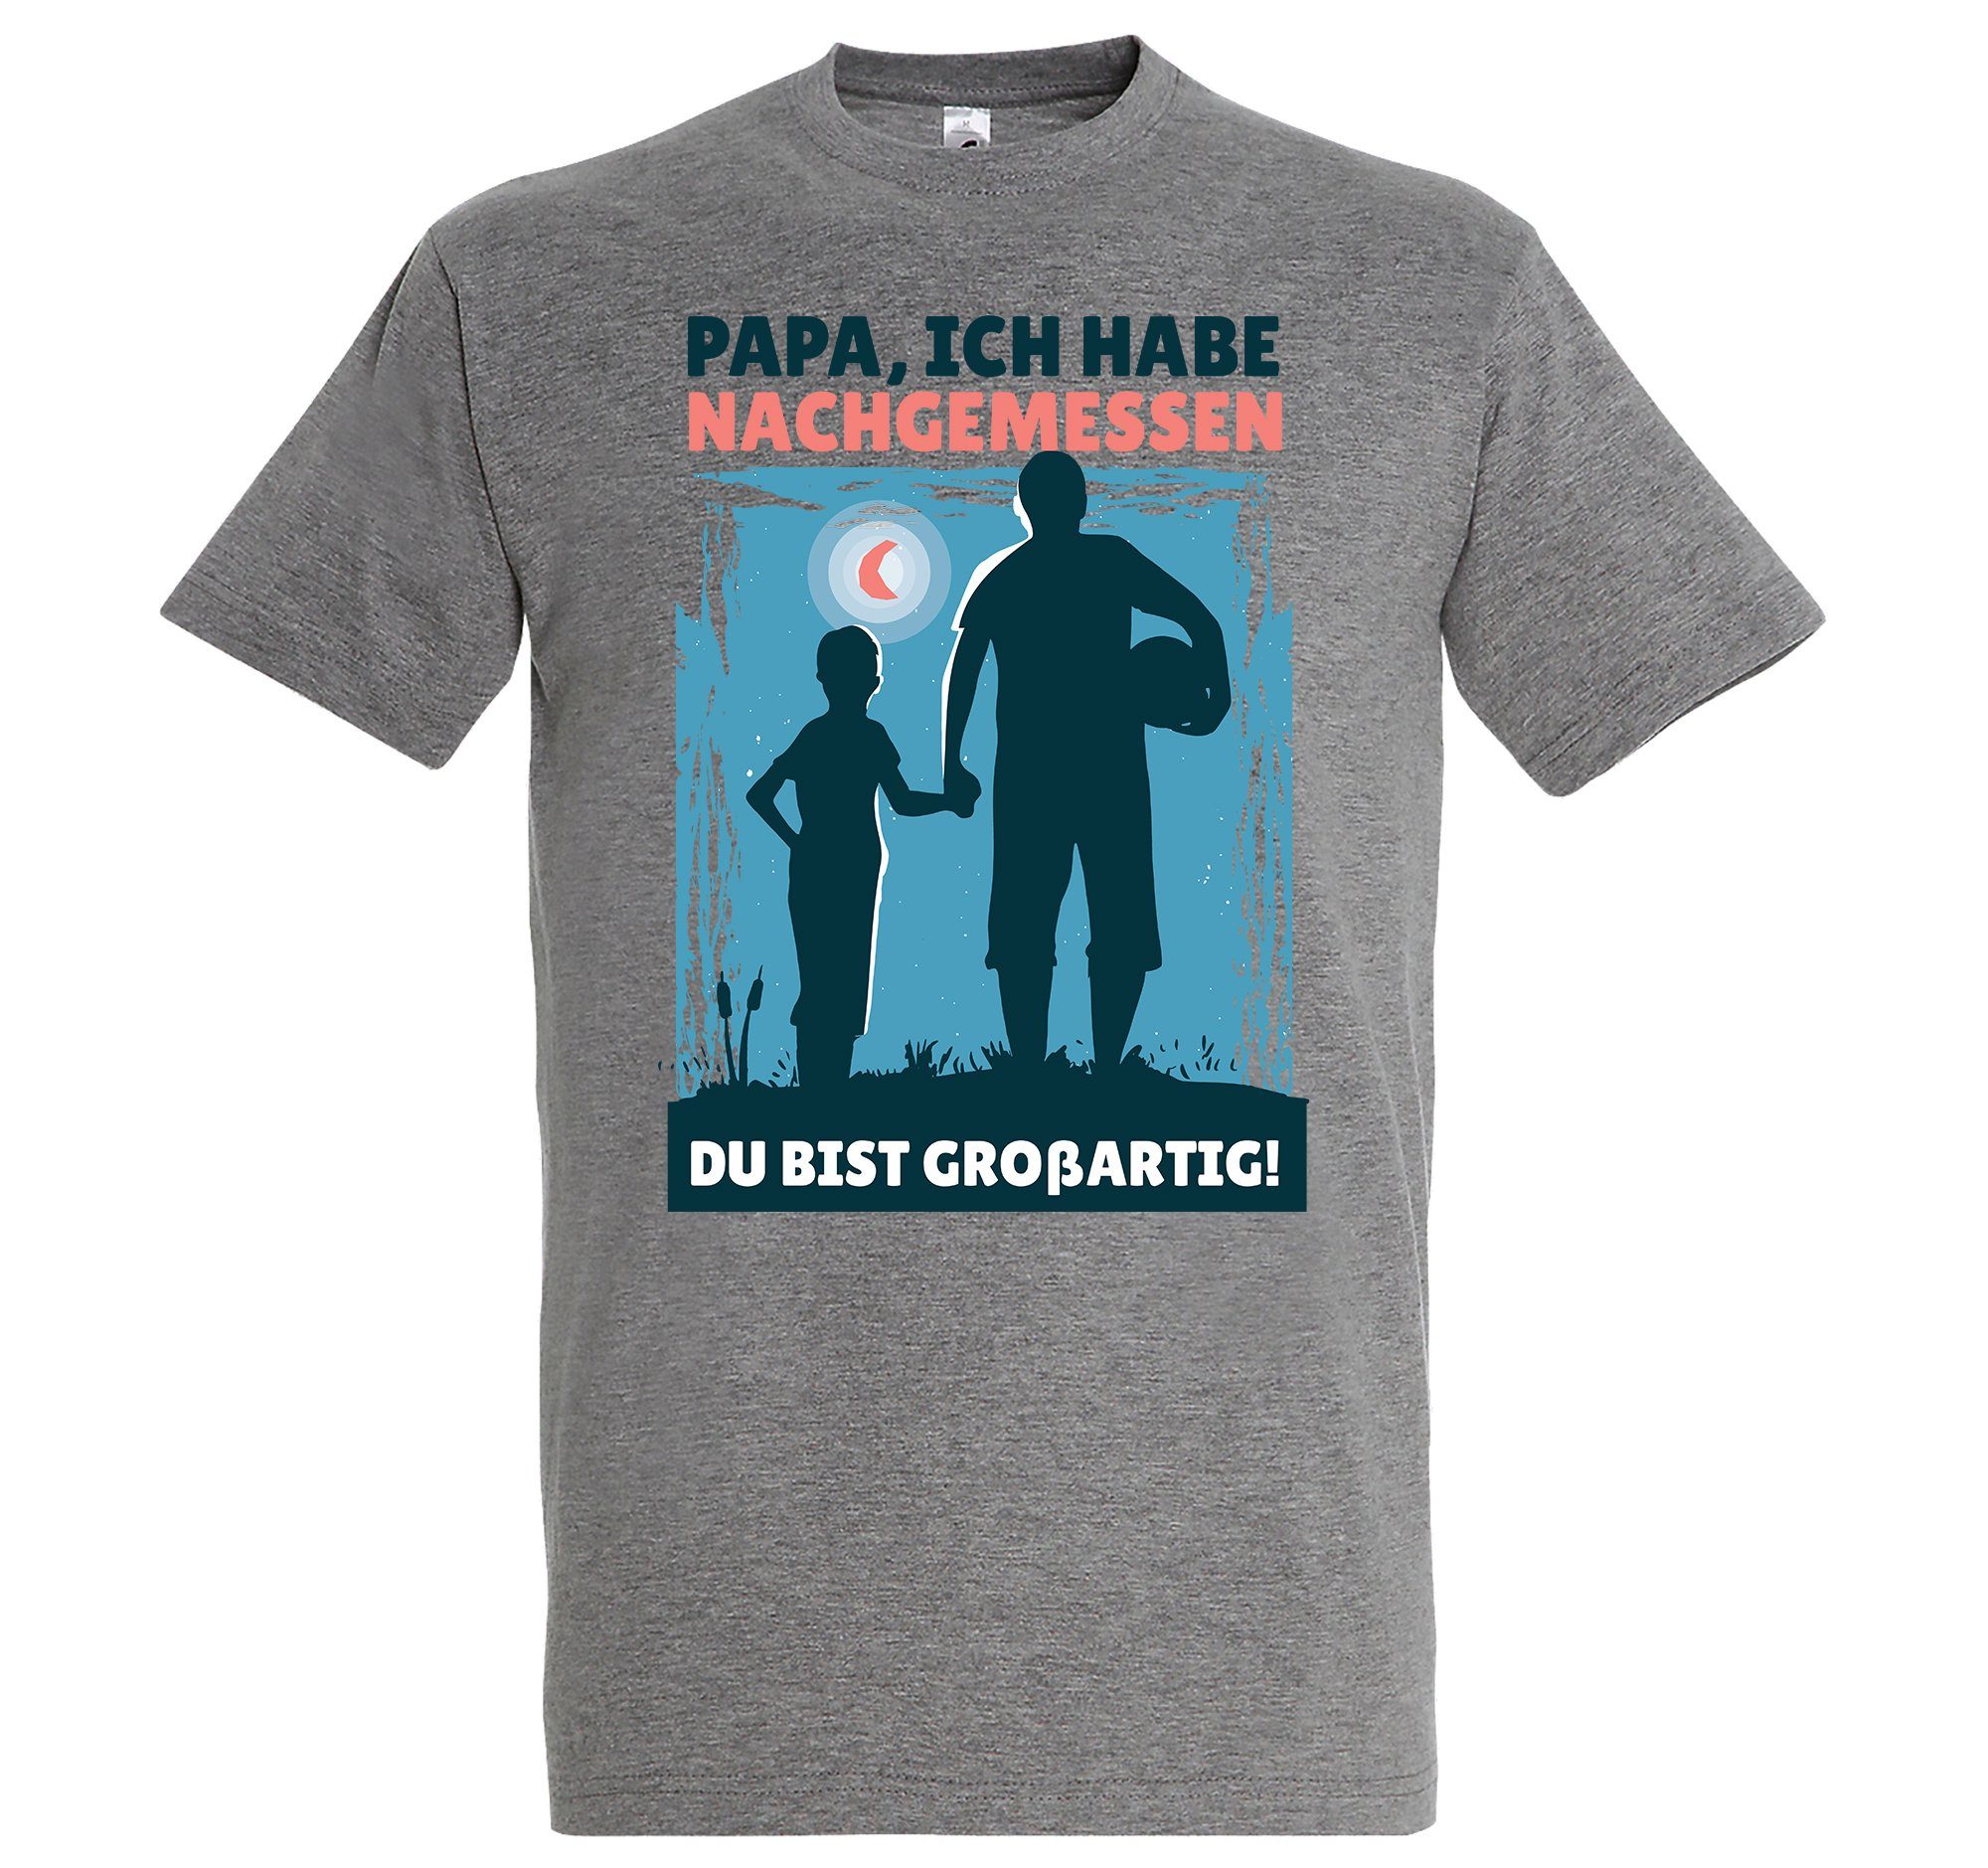 Youth Designz T-Shirt "Papa, Großartig" Herren Du Shirt Bist Grau trenidgem Frontprint mit